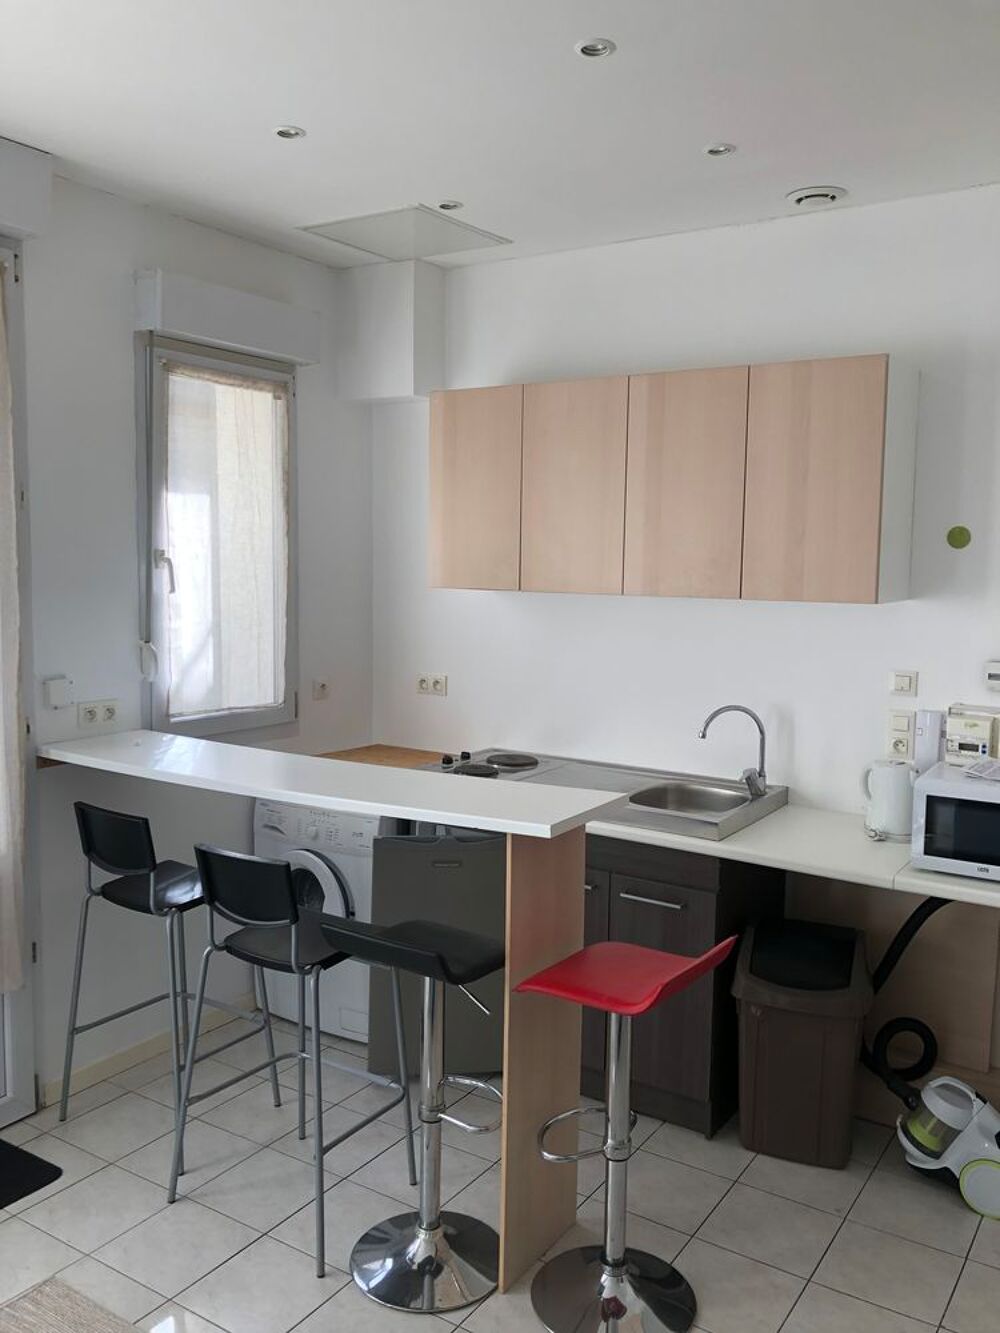 Location Appartement Location - Appartement meubl - 30 m - Reims (51100) - 580  HC Reims